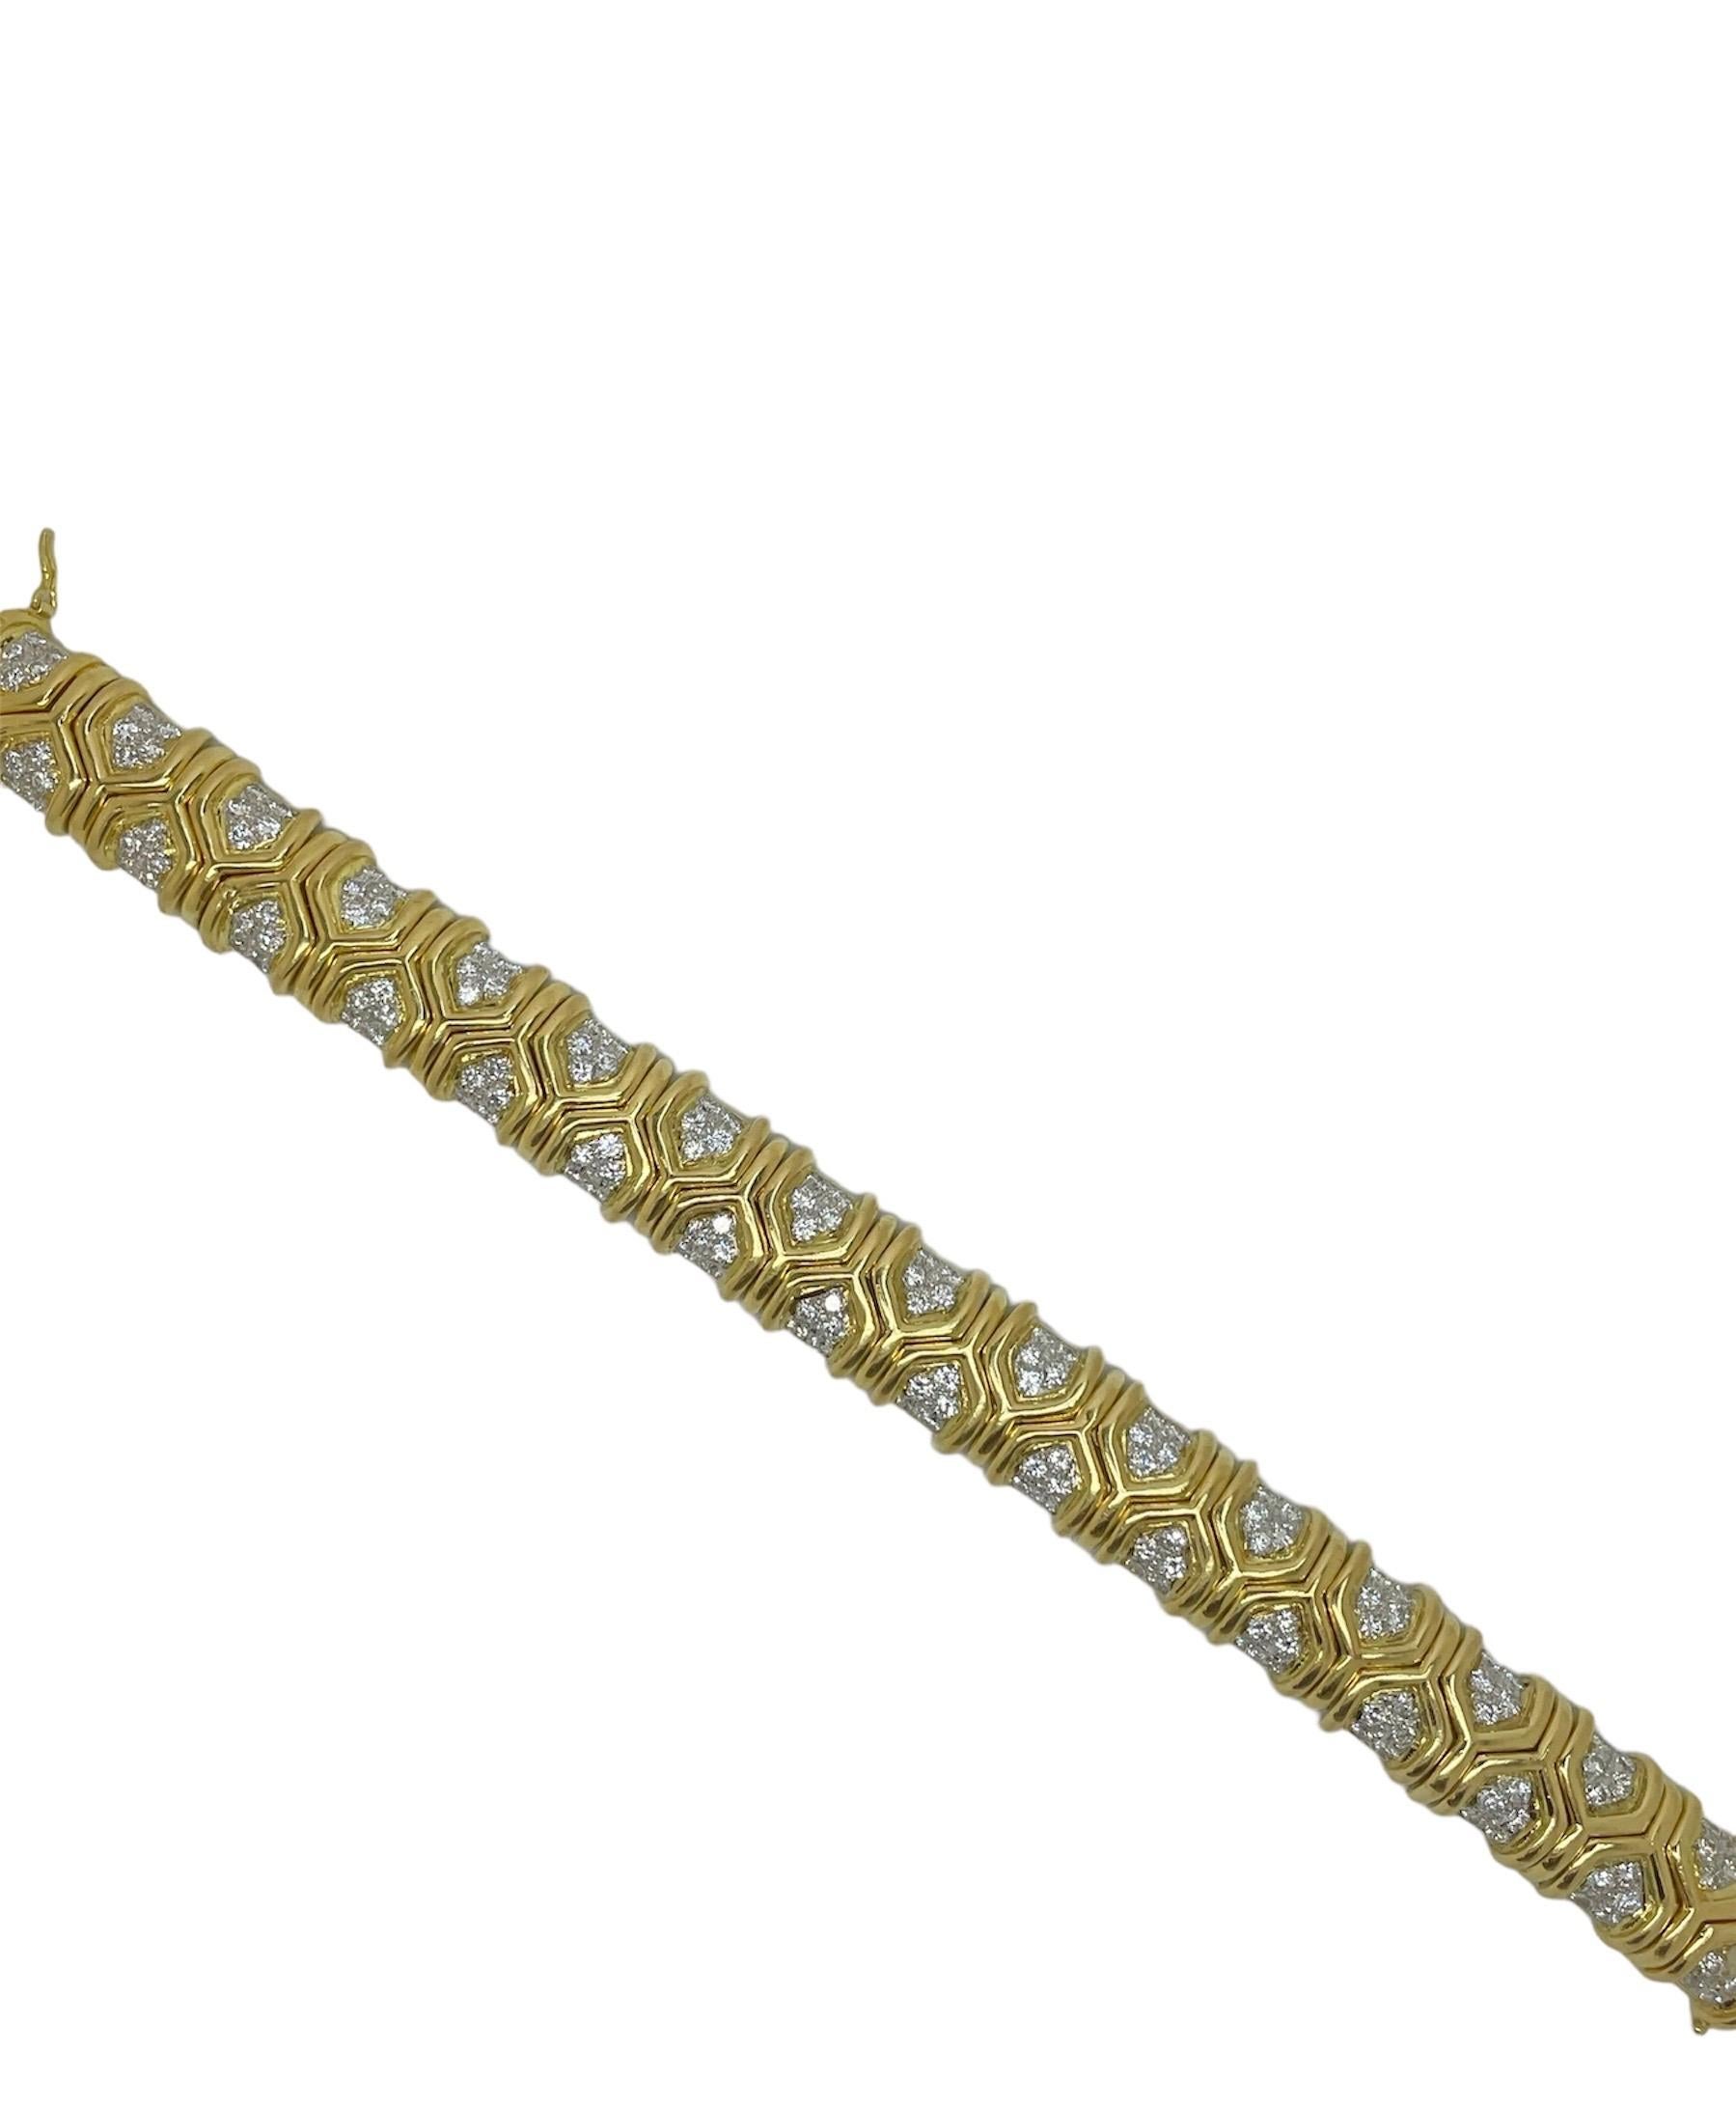 Ce magnifique bracelet est fabriqué en or jaune 18 carats et présente un motif géométrique orné de diamants ronds de taille brillant de première qualité, pesant au total environ 6,75 carats. Parfait pour égayer n'importe quel look !

Poids brut :